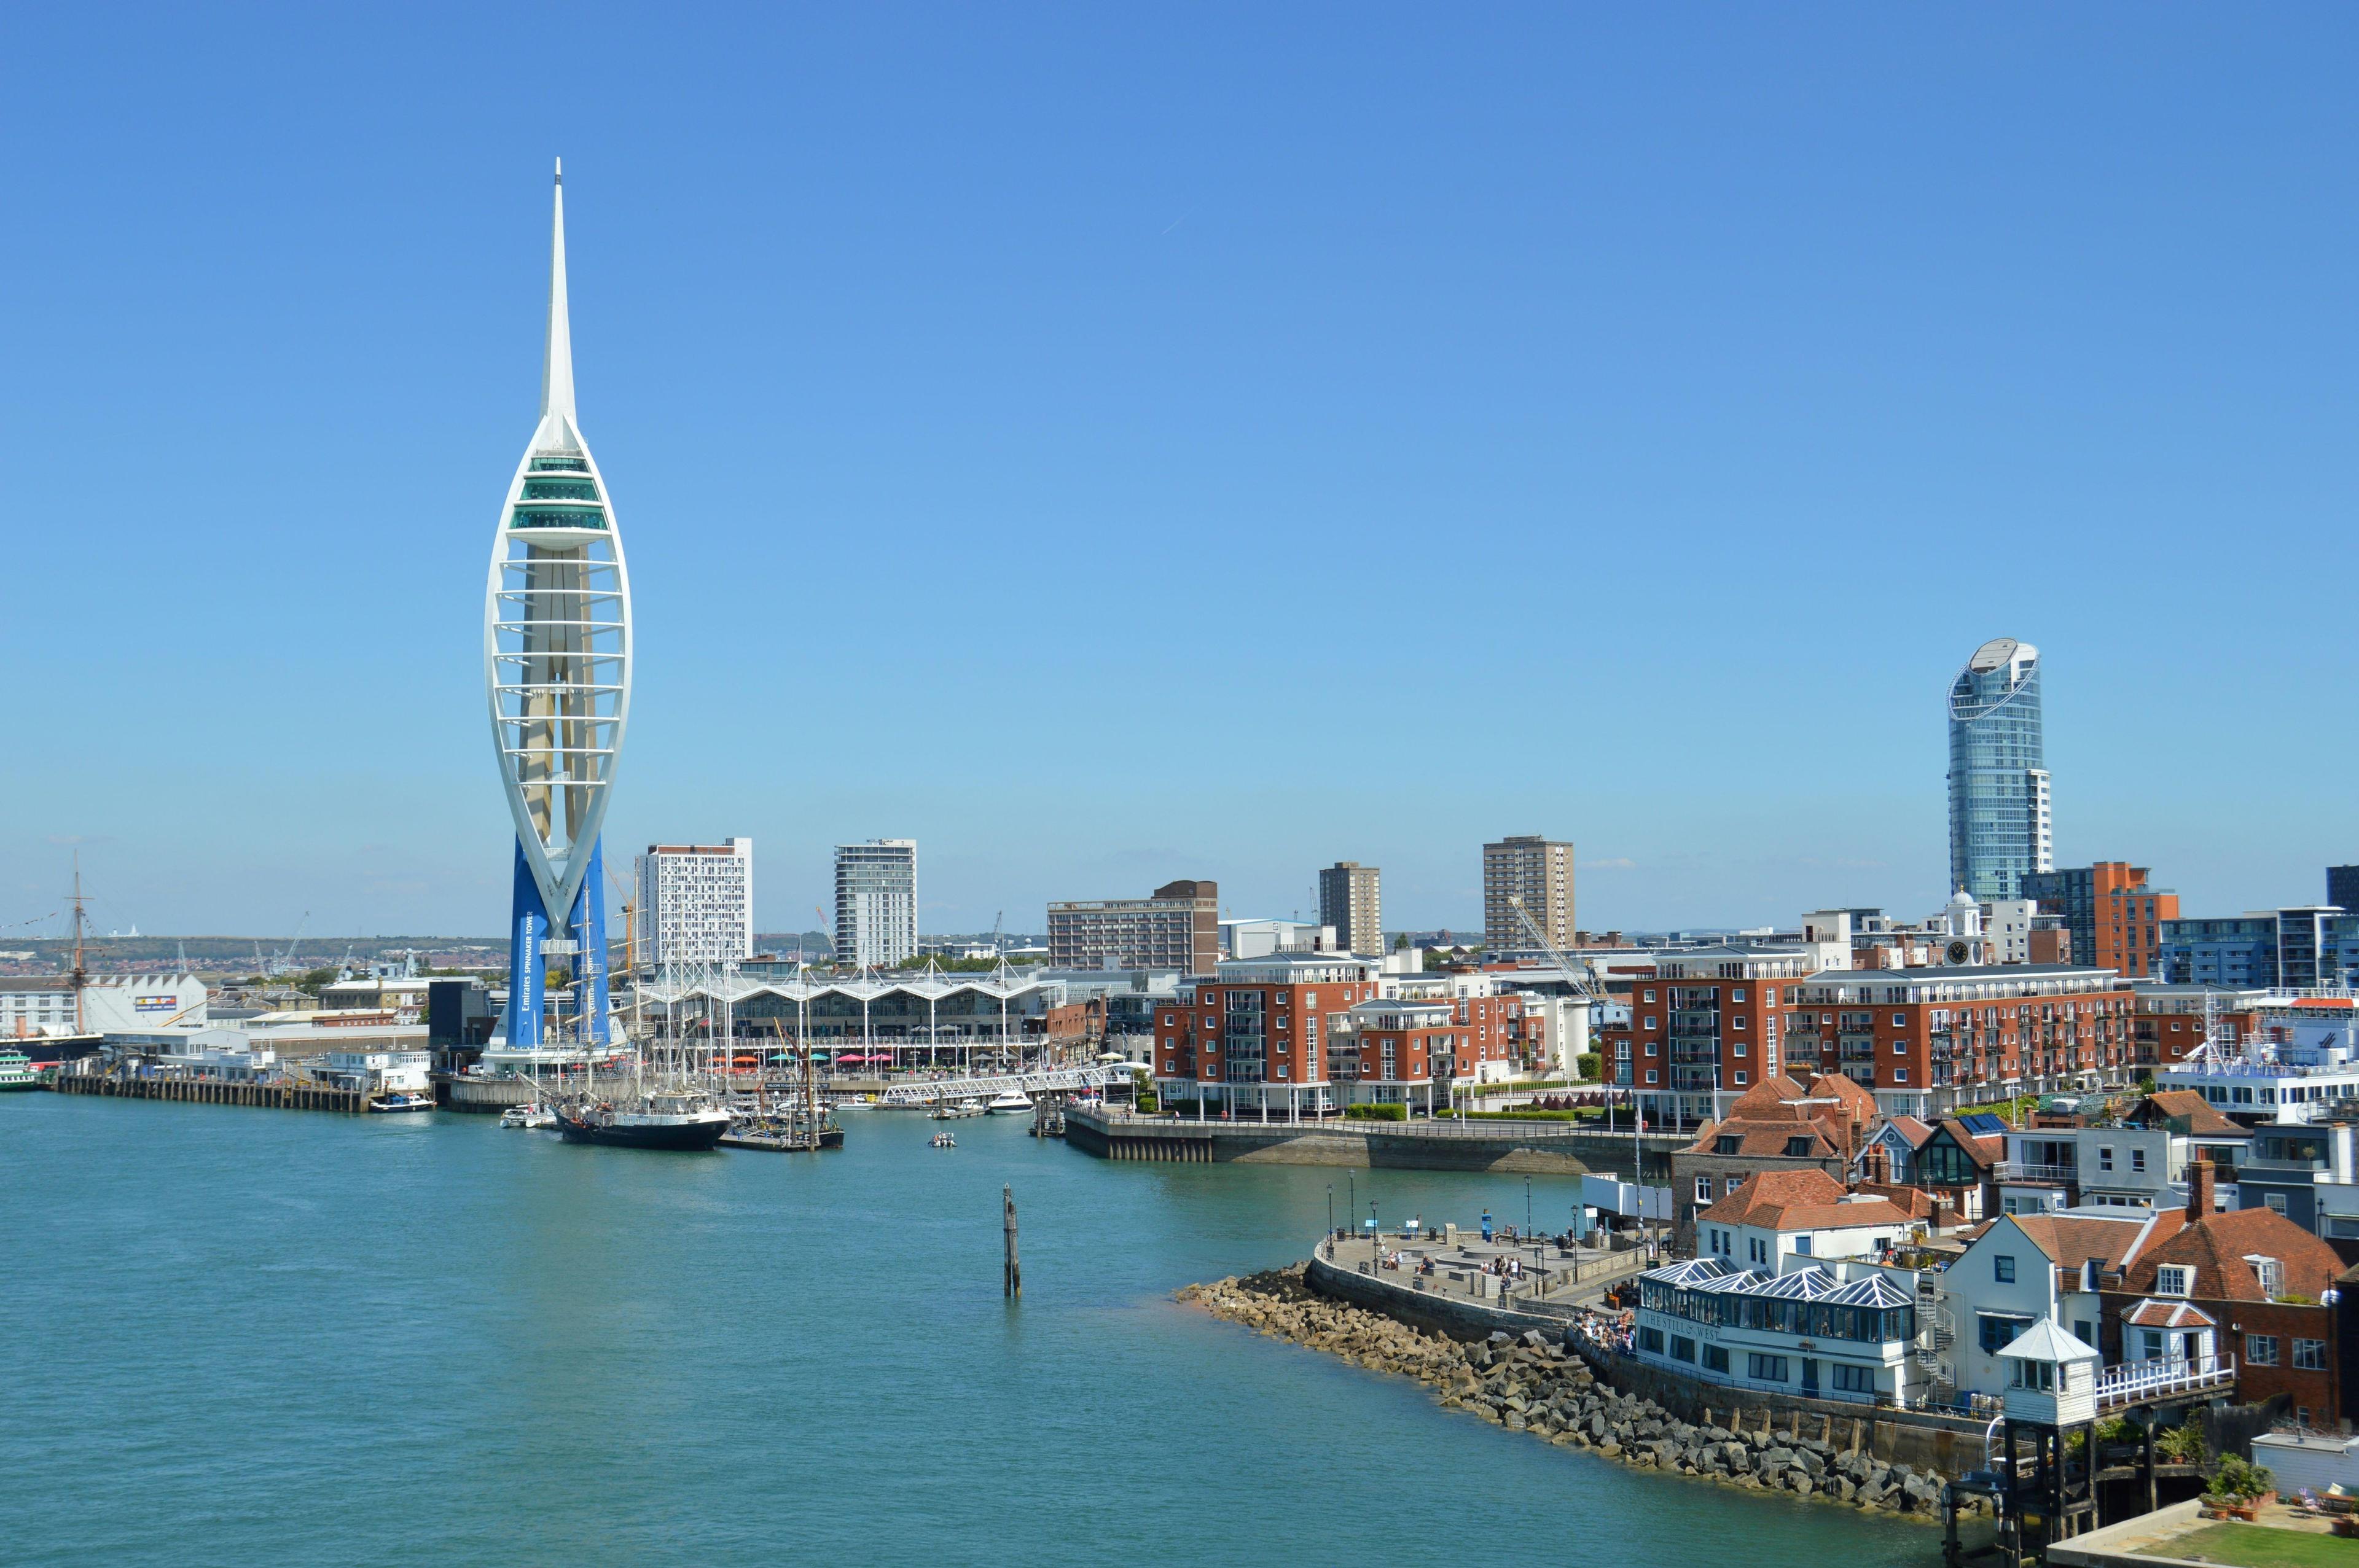 Landscape of Portsmouth